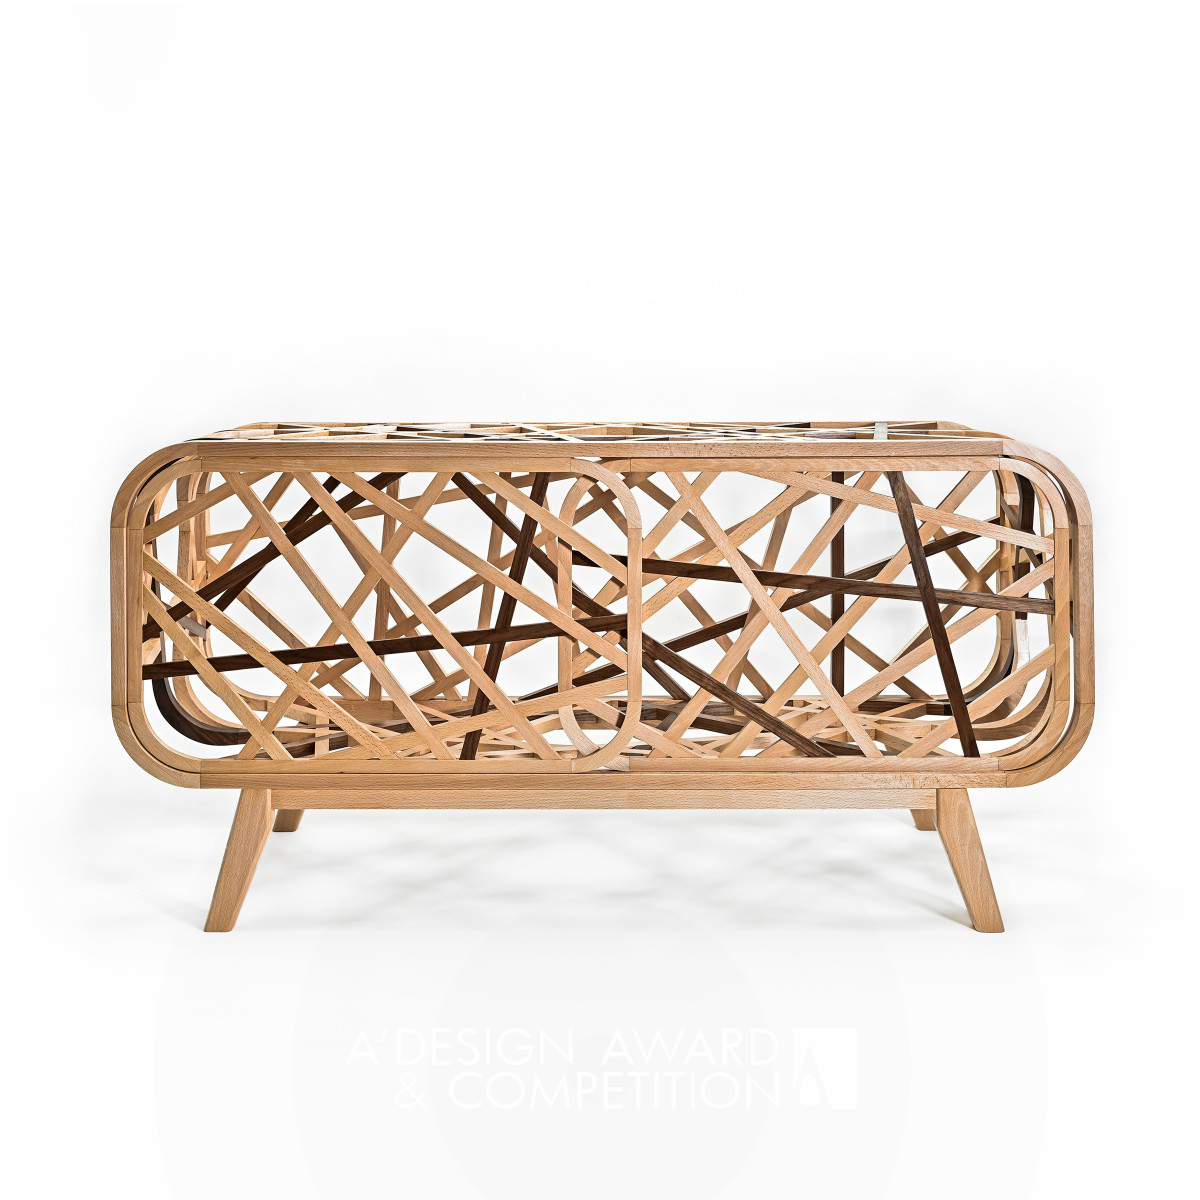 Interweave Cabinet by Yu-Ching Chen Bronze Furniture Design Award Winner 2024 